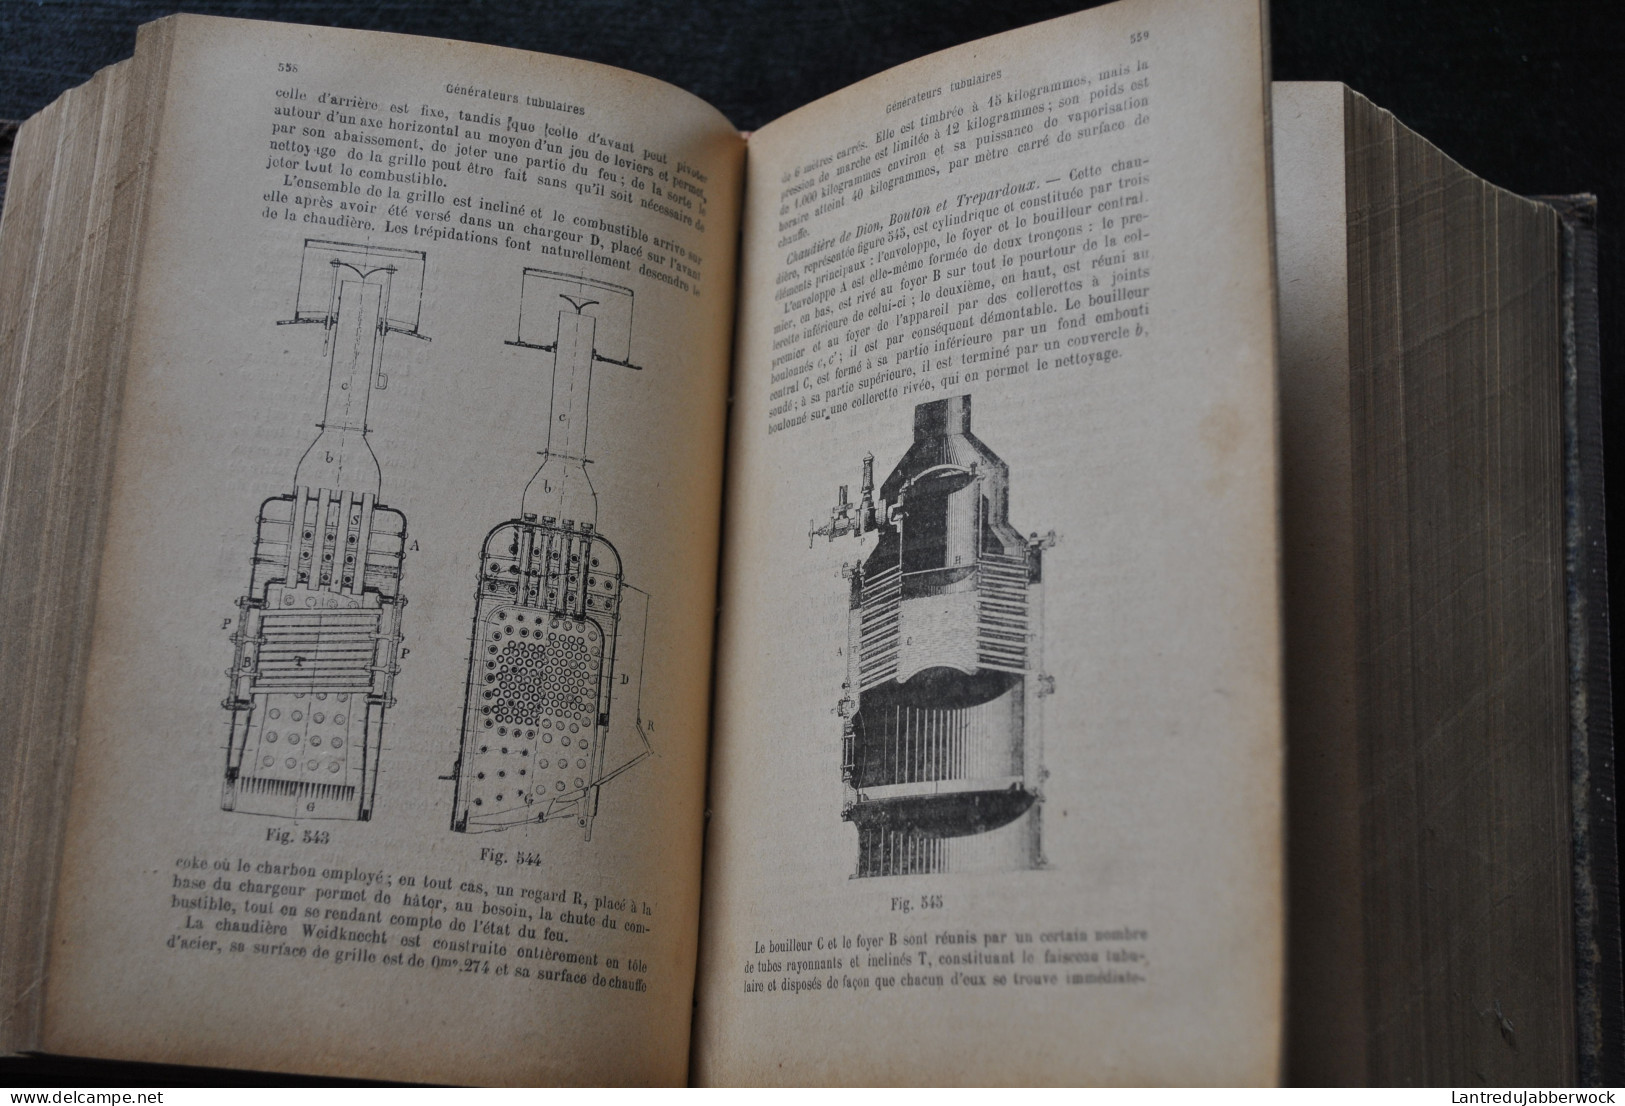 VIGREUX MILANDRE Notes et formules de l'ingénieur du constructeur mécanicien du métallurgiste et de l'électricien 1900